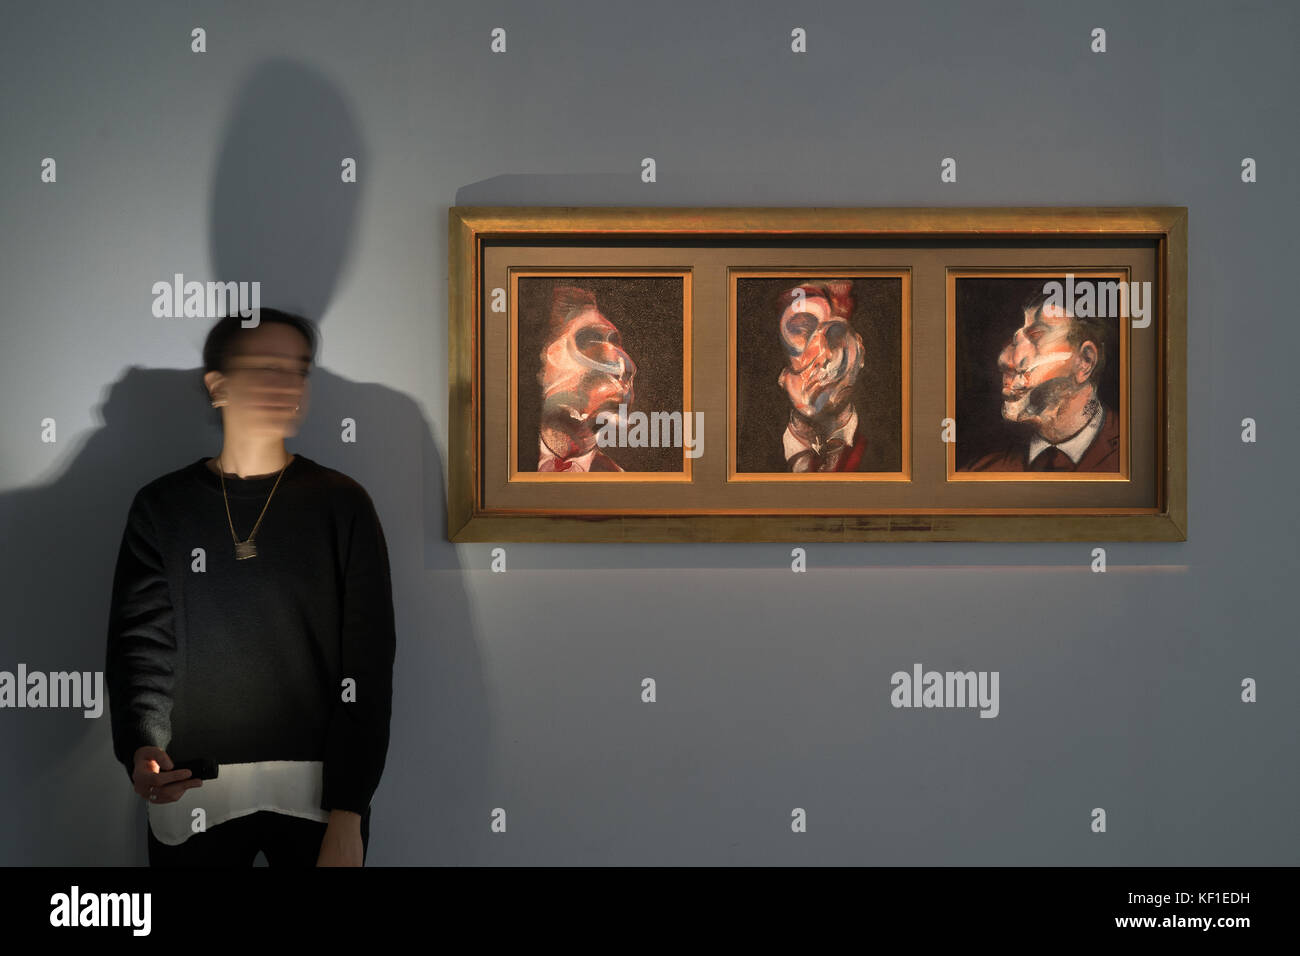 Londra, Regno Unito. 25 ott 2017. tre studi di George Dyer da Francis Bacon, un trittico in mostra da Sotheby's a Londra prima di andare all'asta a New York il 16 novembre dove sono attesi per recuperare $ 35-45 milioni. photo data: mercoledì 25 ottobre, 2017. Credito: roger garfield/alamy live news Foto Stock